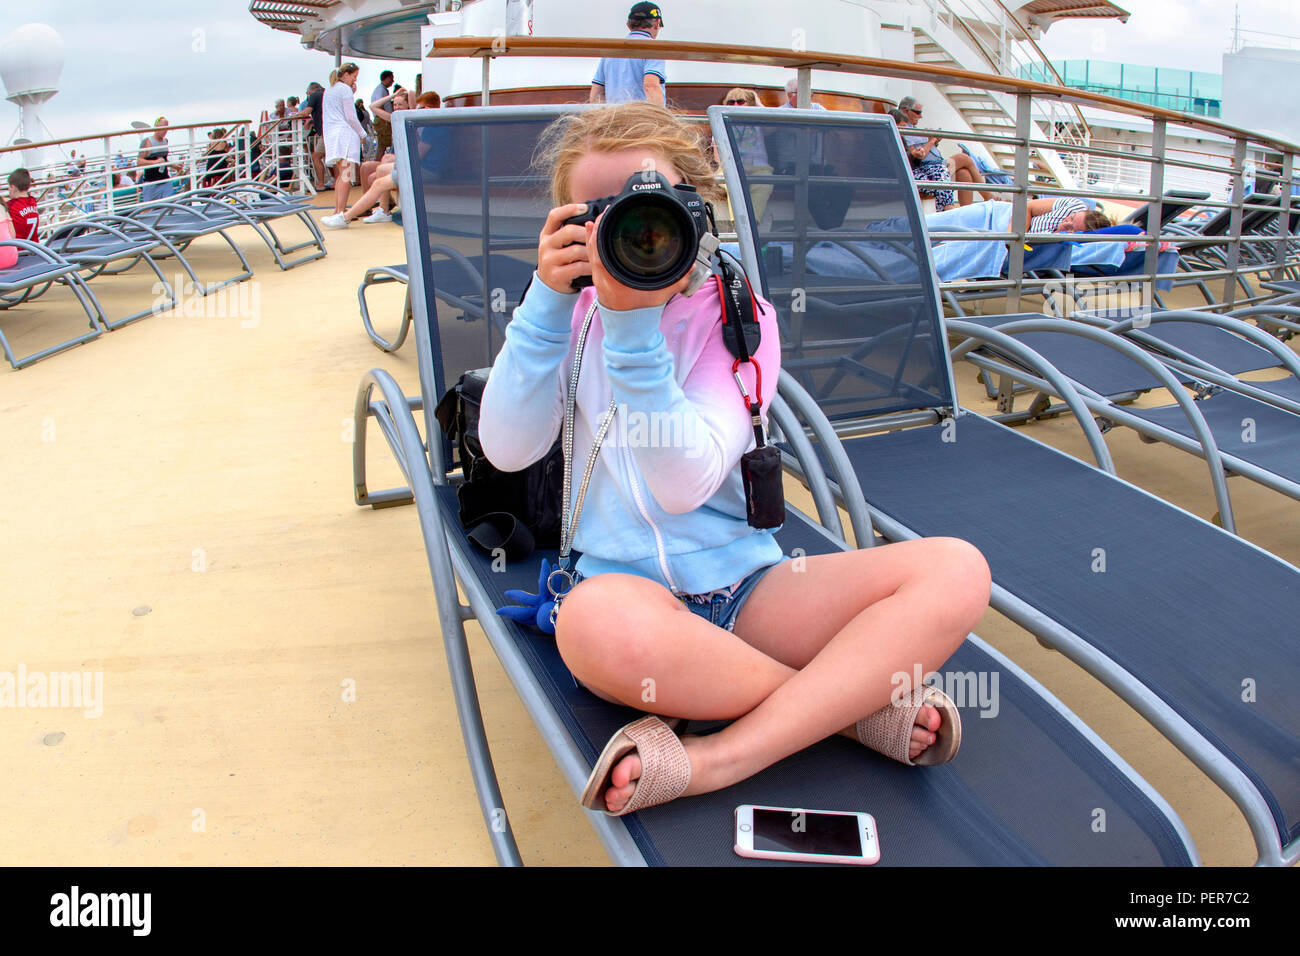 Joven tomando una fotografía mientras sentado en hamacas en un buque de crucero Foto de stock